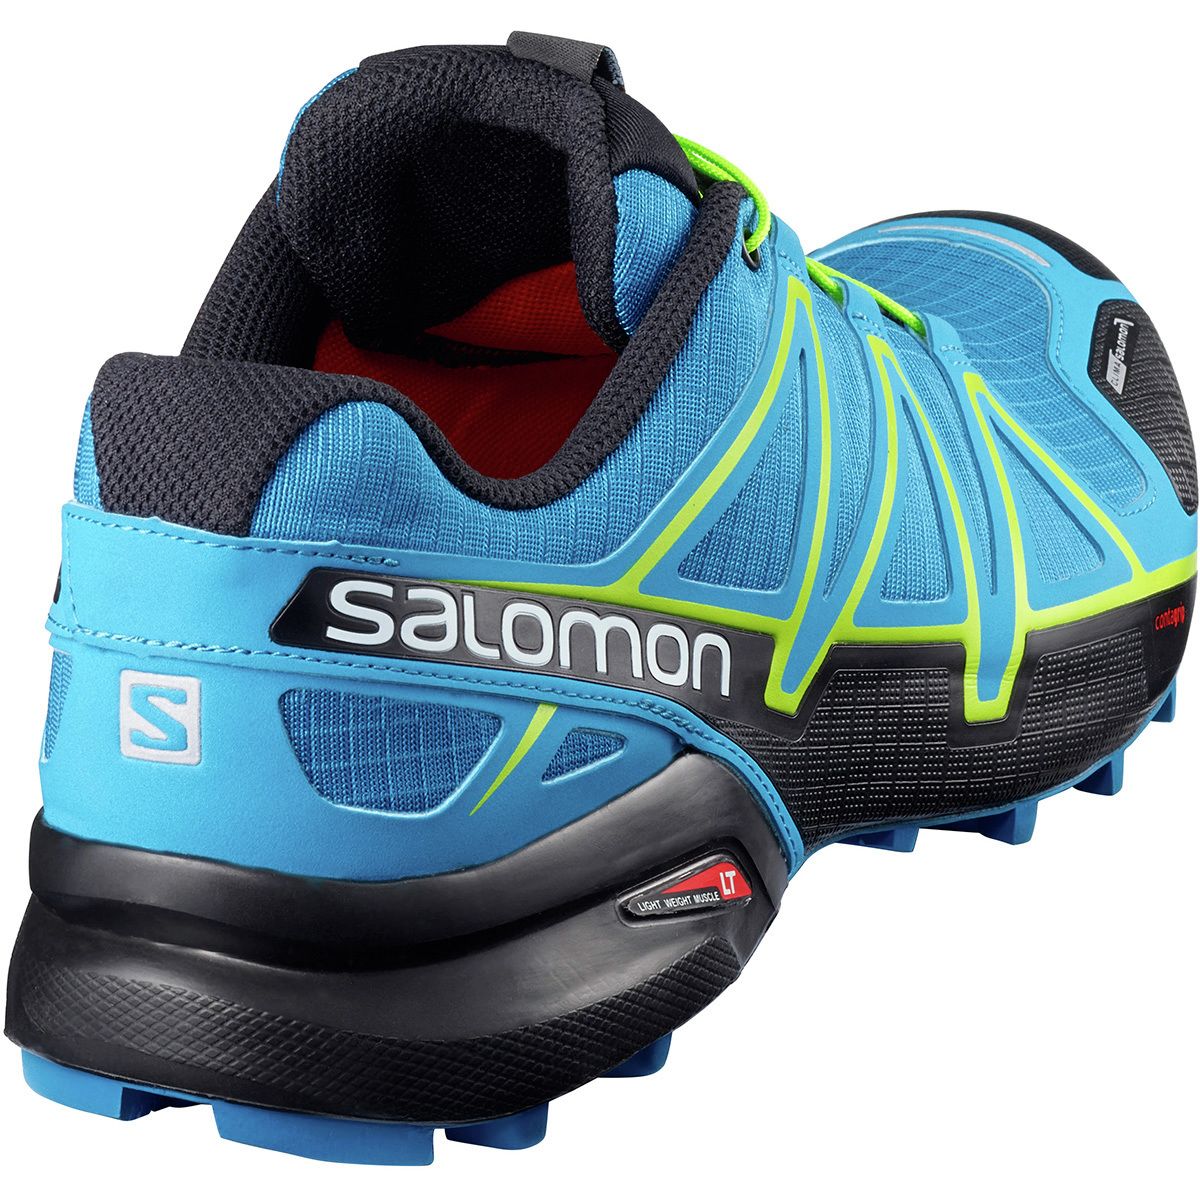 Salomon Speedcross 4 CS Trail Running Shoe - Men's - Footwear